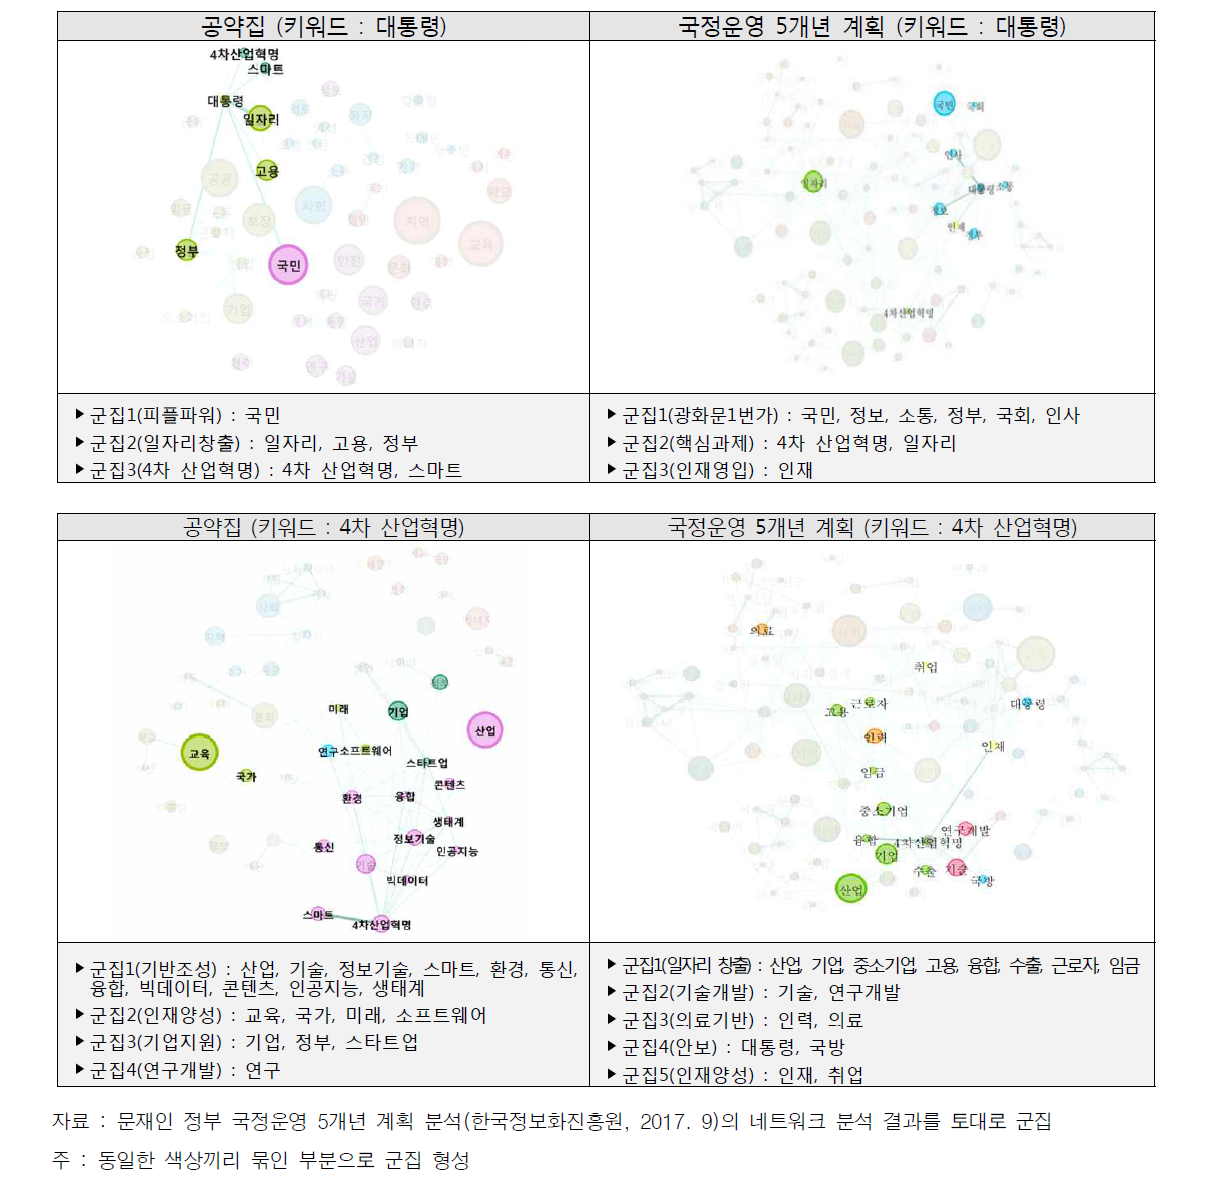 공약집과 국정운영 5개년 계획의 네트워크 분석 결과